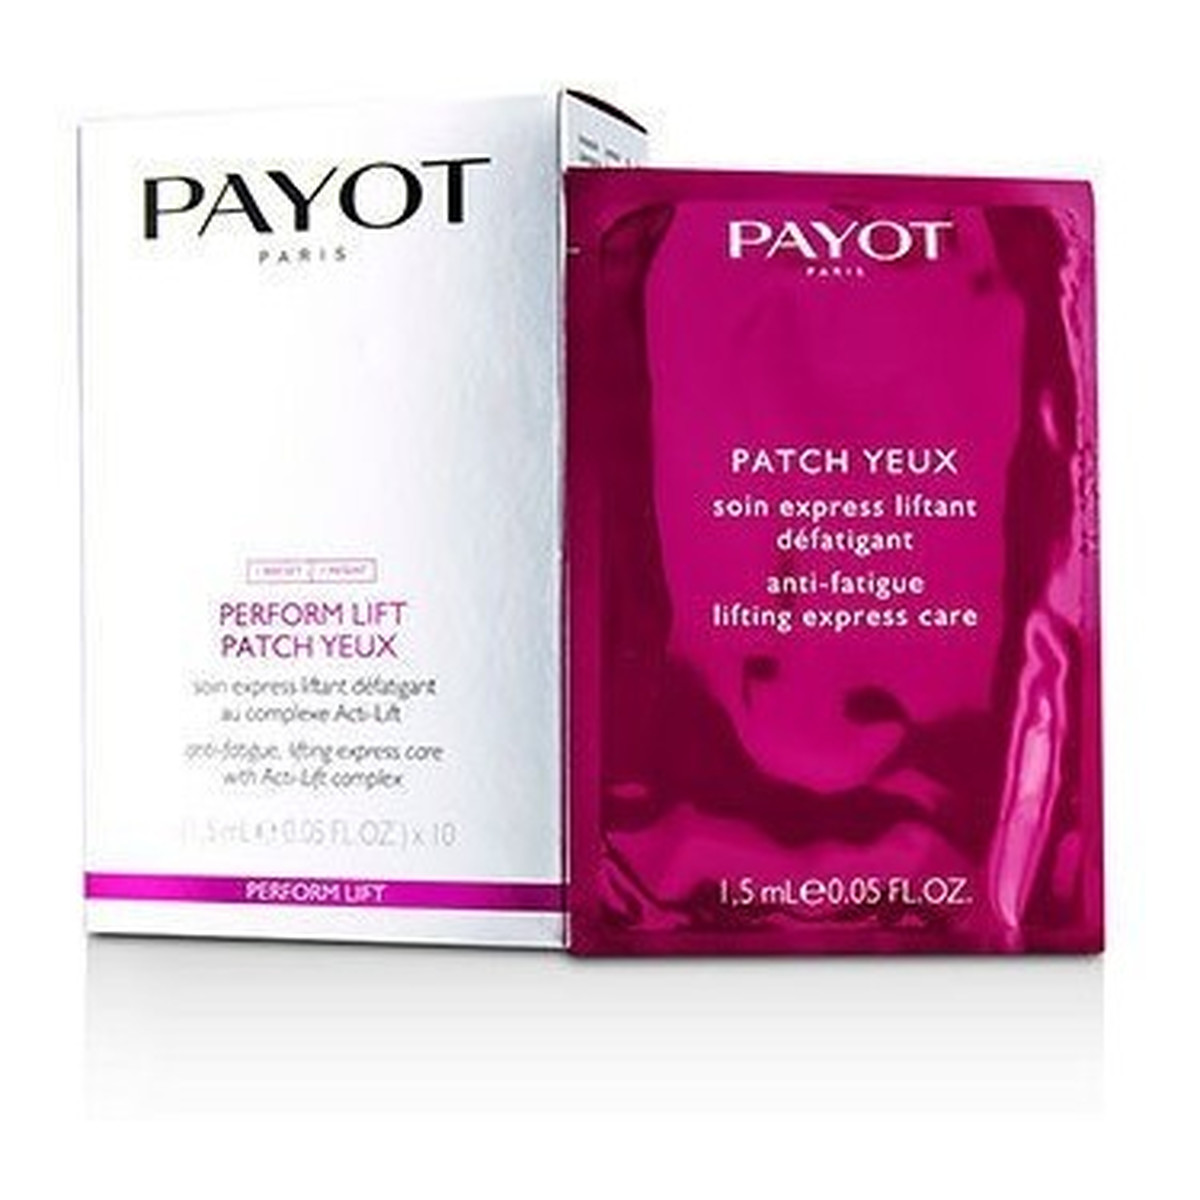 Payot Perform Lift Patch Yeux Anti-Fatigue Lifting Express Care Ekspresowa pielęgnacja okolicy oczu z kompleksem Acti-Lift